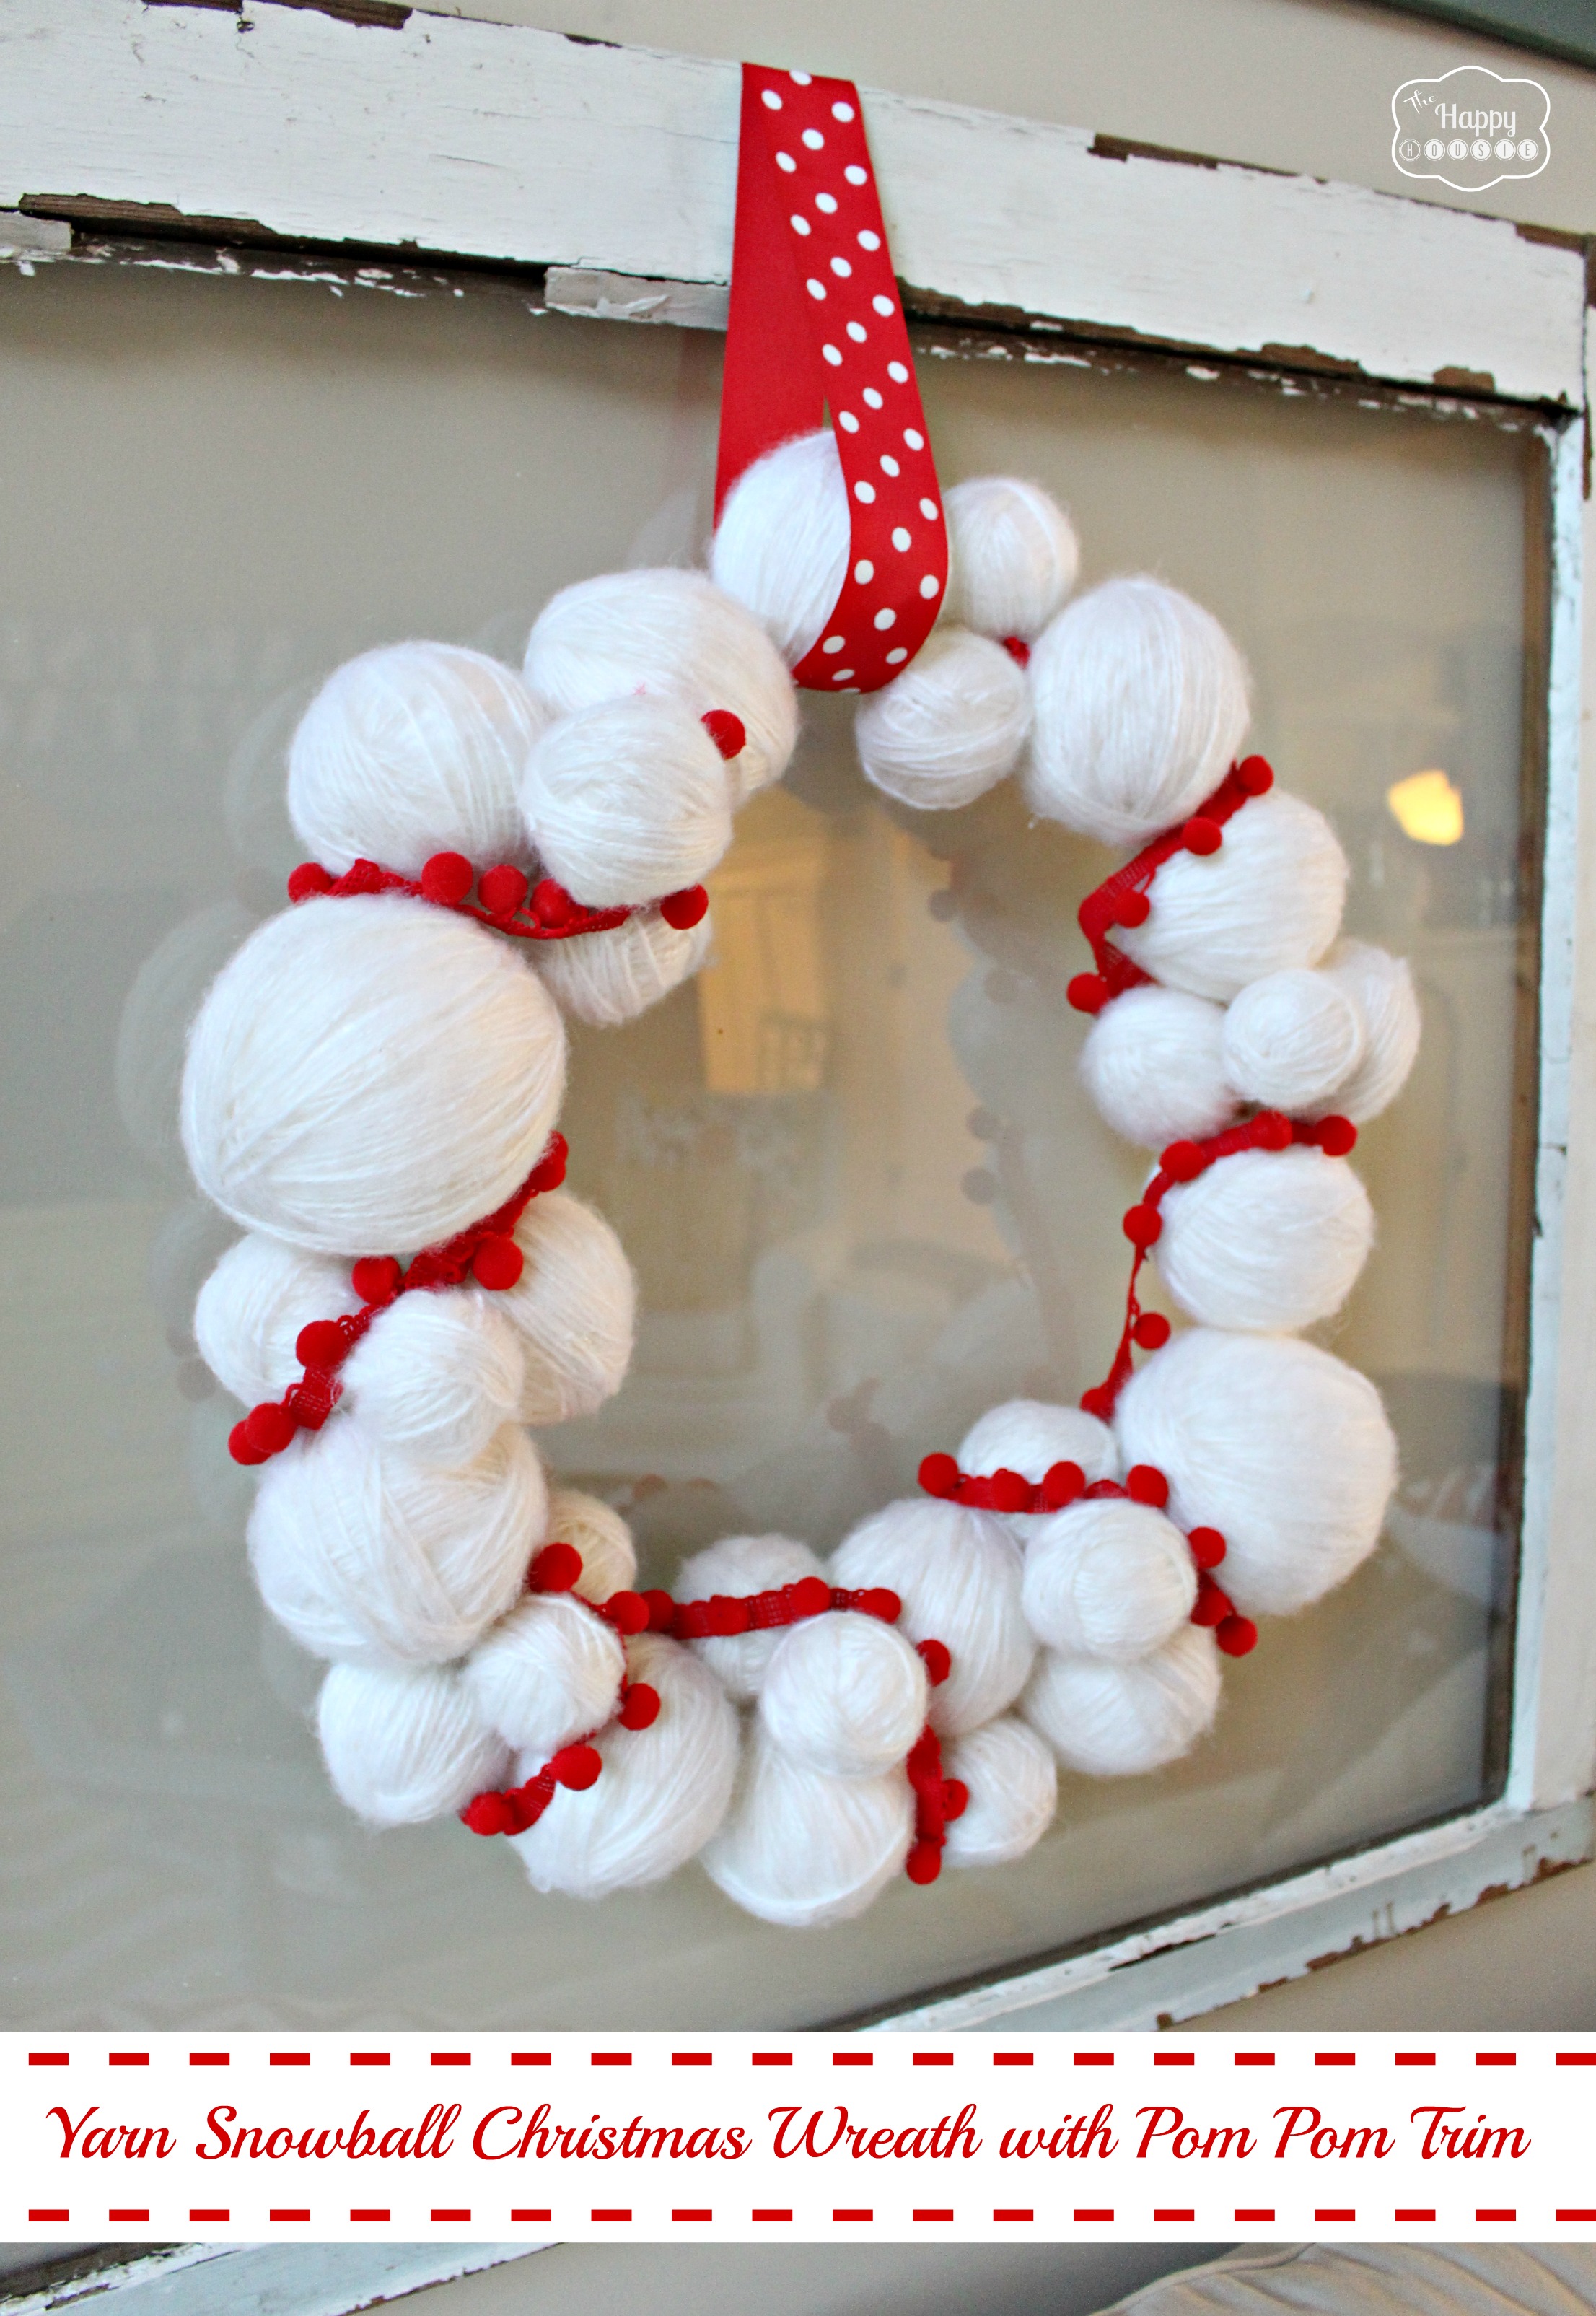 Yarn snowball christmas wreath with pom pom trim.